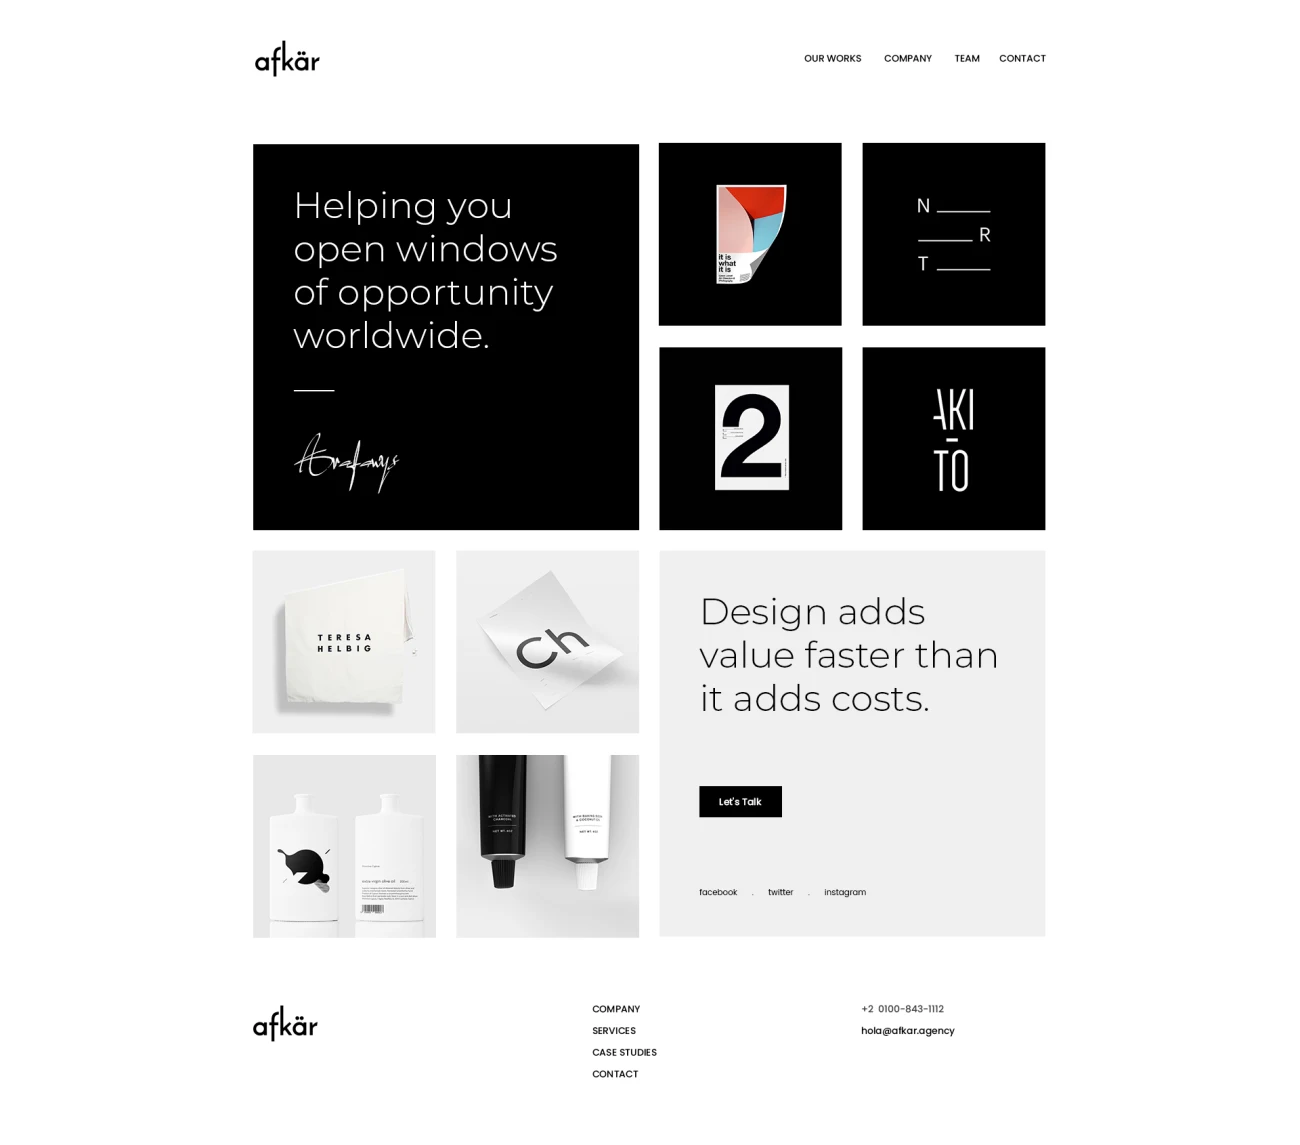 30款摄影设计工作室官网模板素材 Afkar – Agency Website Design PSD Template .psd插图13